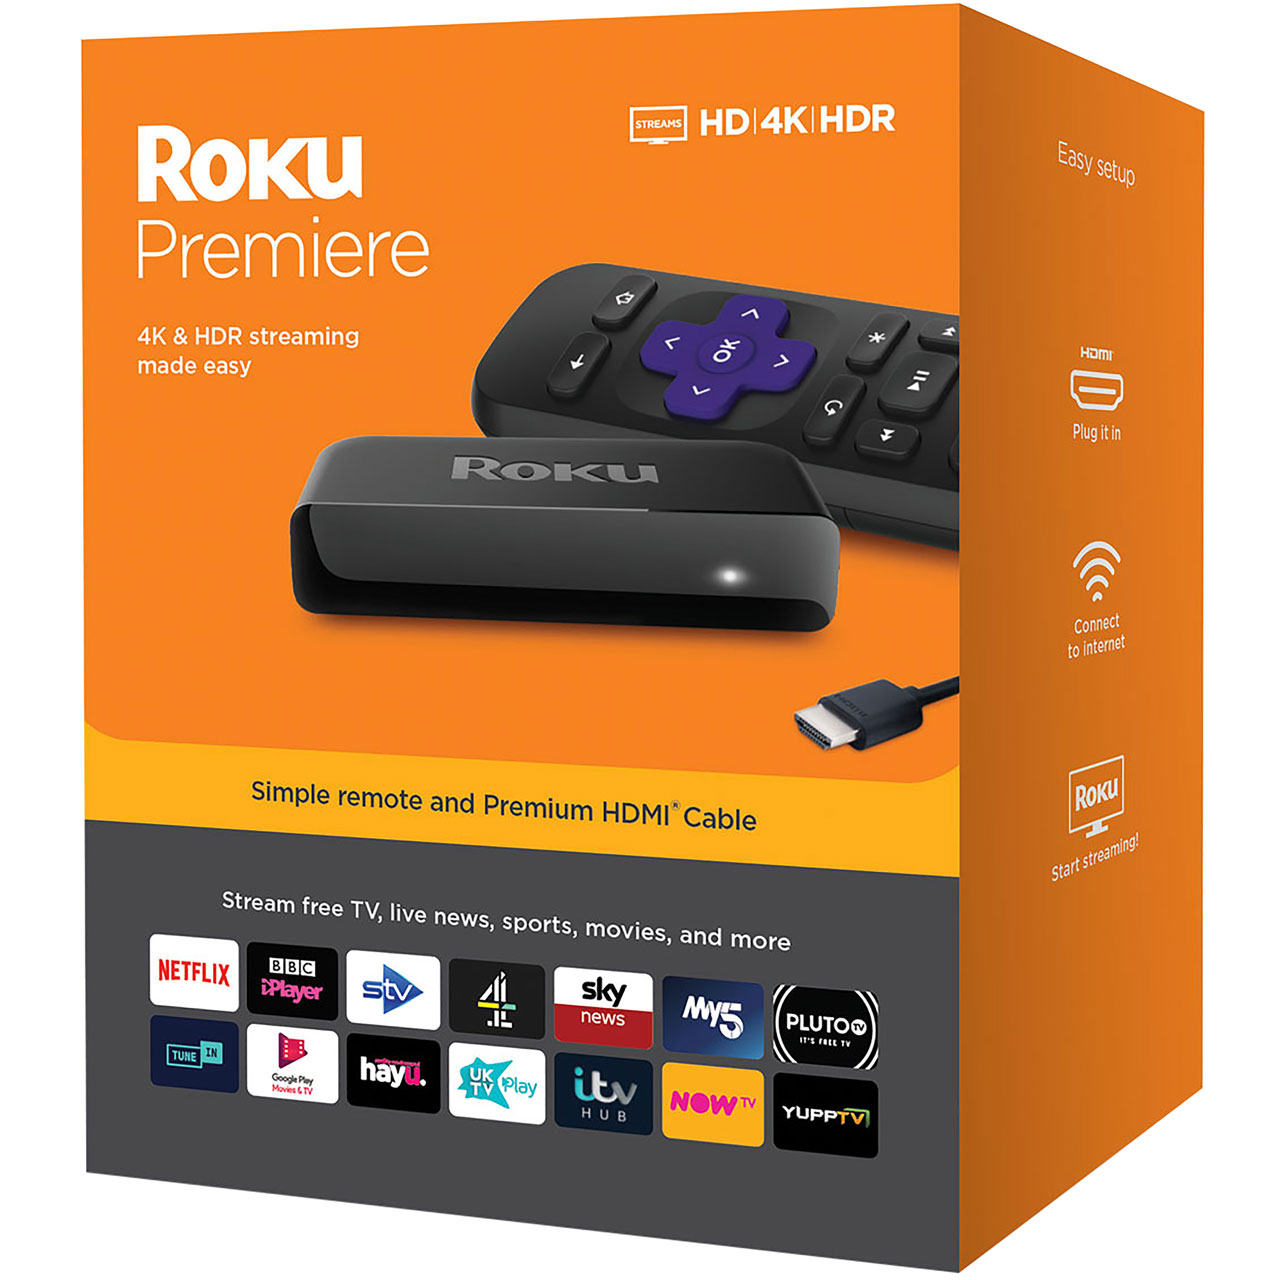 Roku Roku Premiere Streaming Player Smart Box WiFi Netflix BBC iPlayer